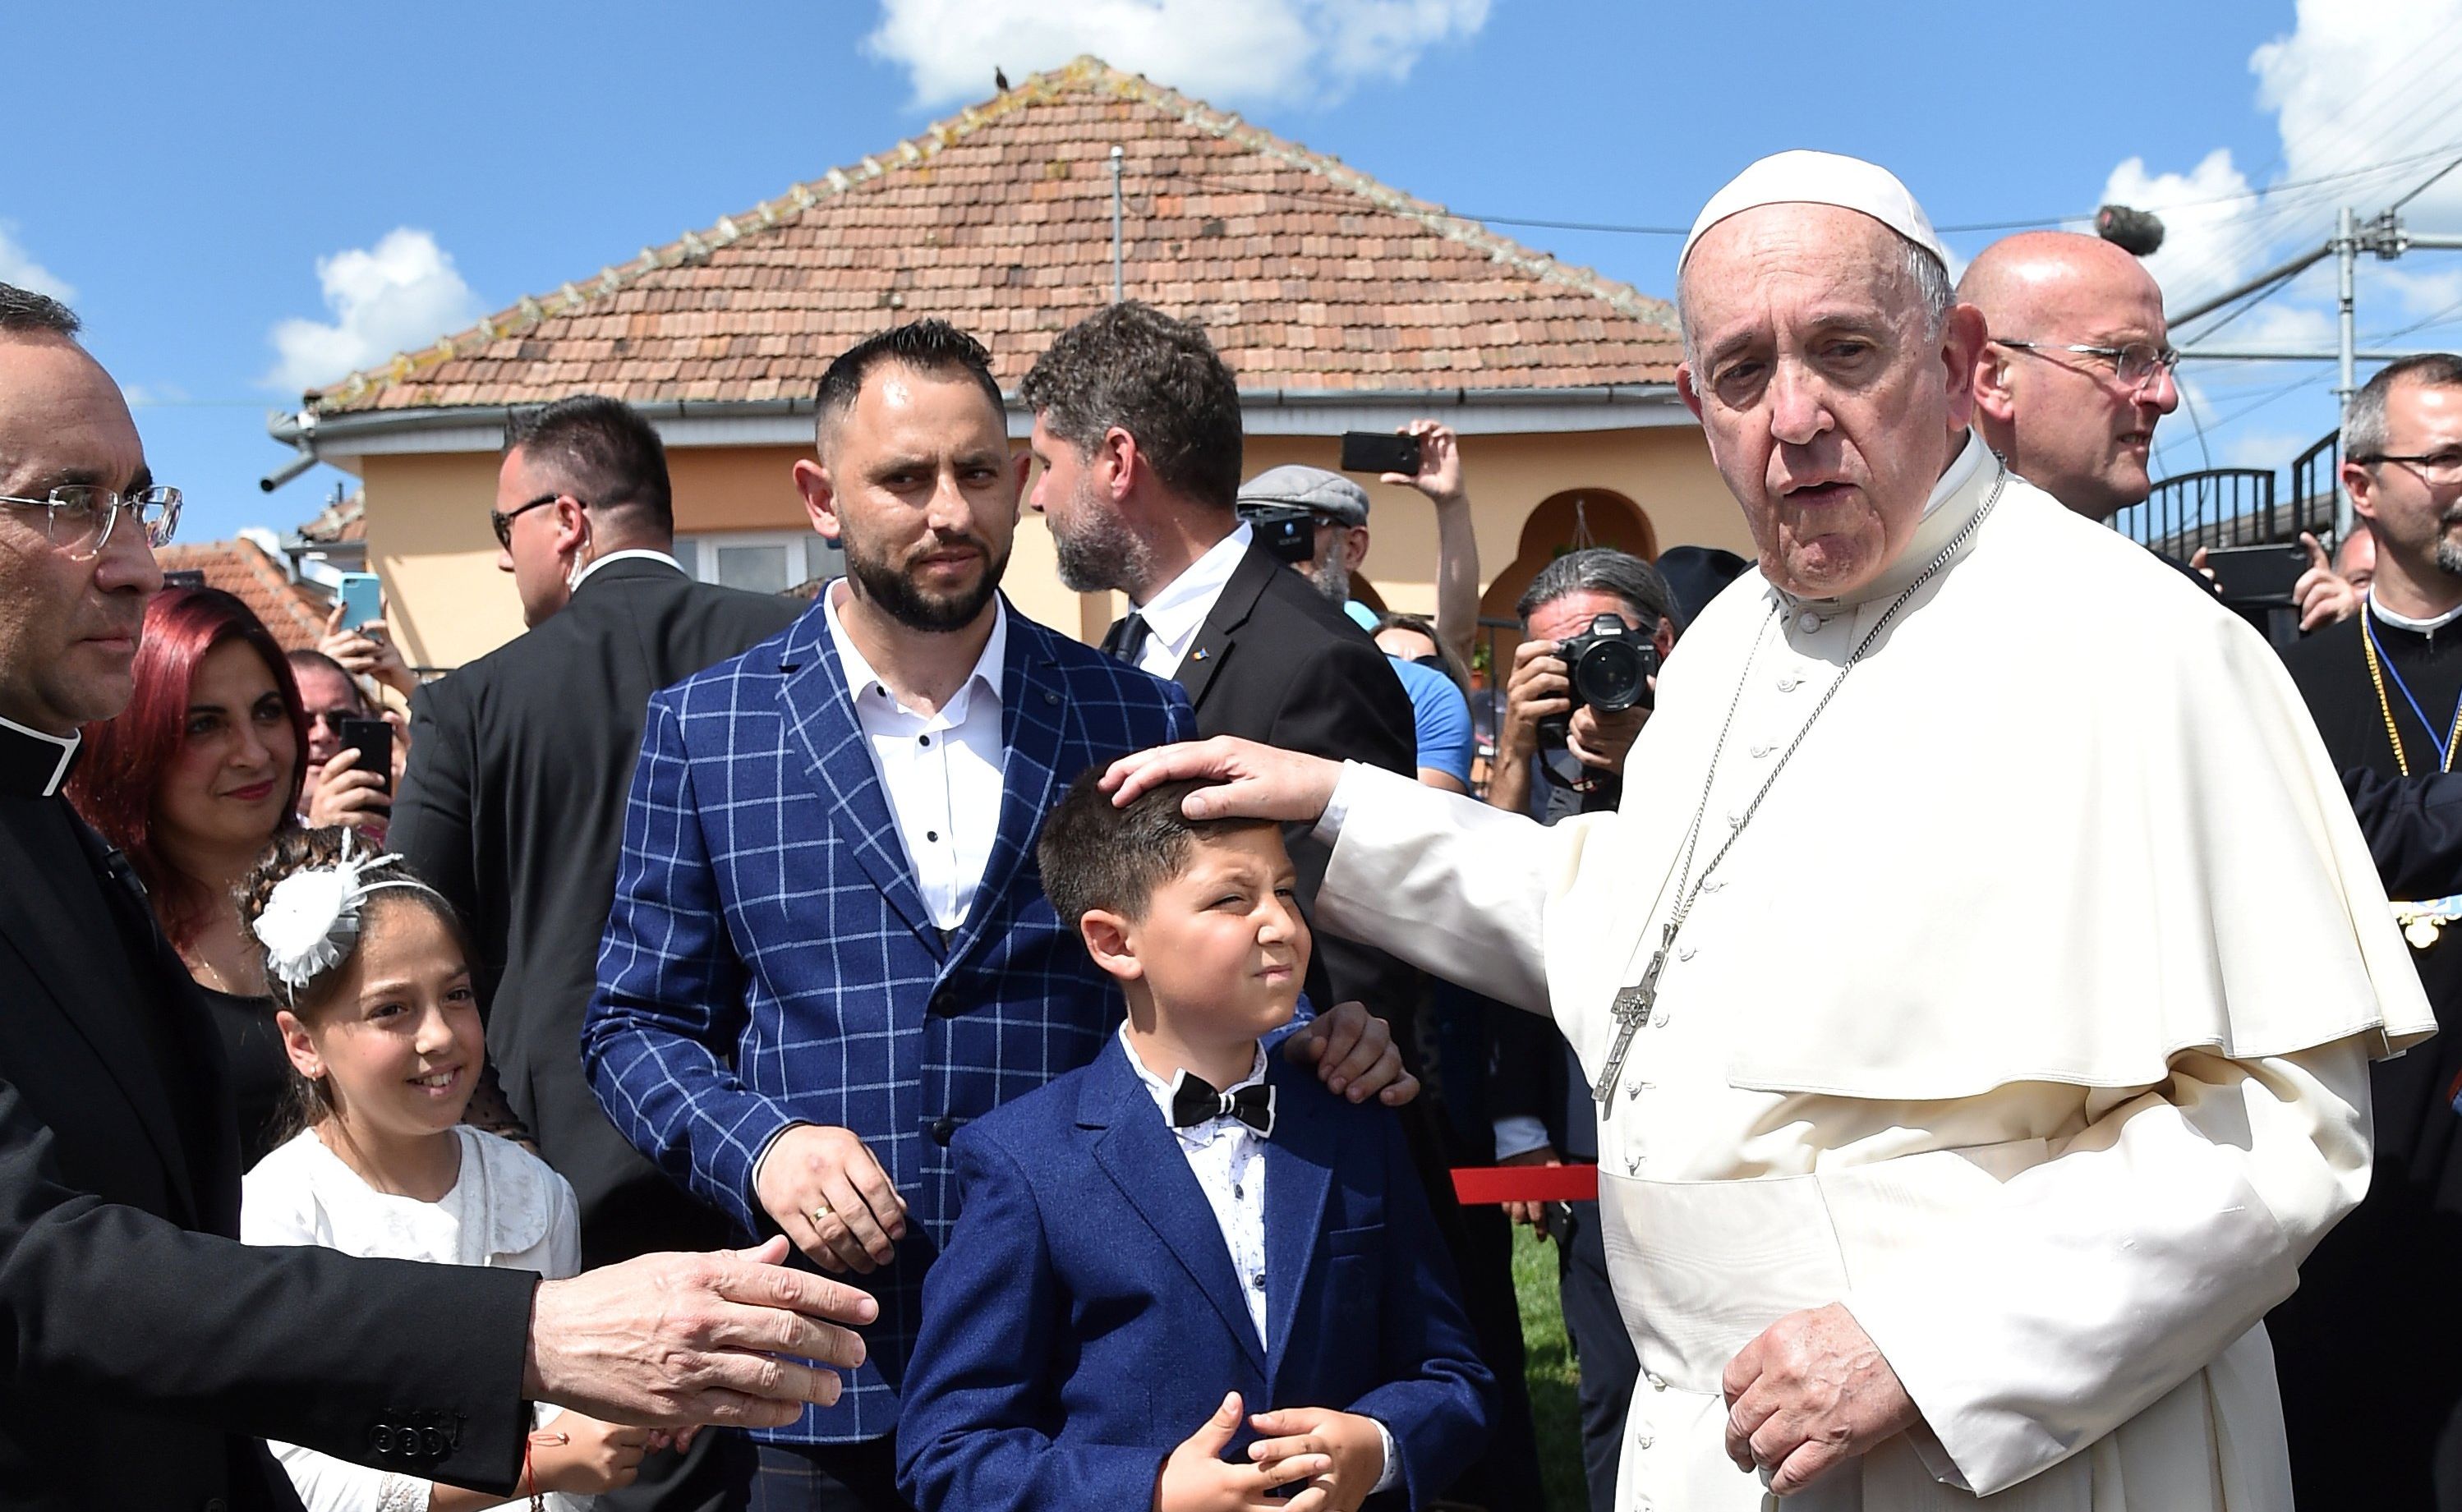 En la actualidad, la persecución a los gitanos y gitanas es vista como parte del pasado. Incluso el papa Francisco pidió perdón en Bucarest (Rumania), en junio de 2019, a la comunidad gitana por su discriminación y maltrato. (Reuters).